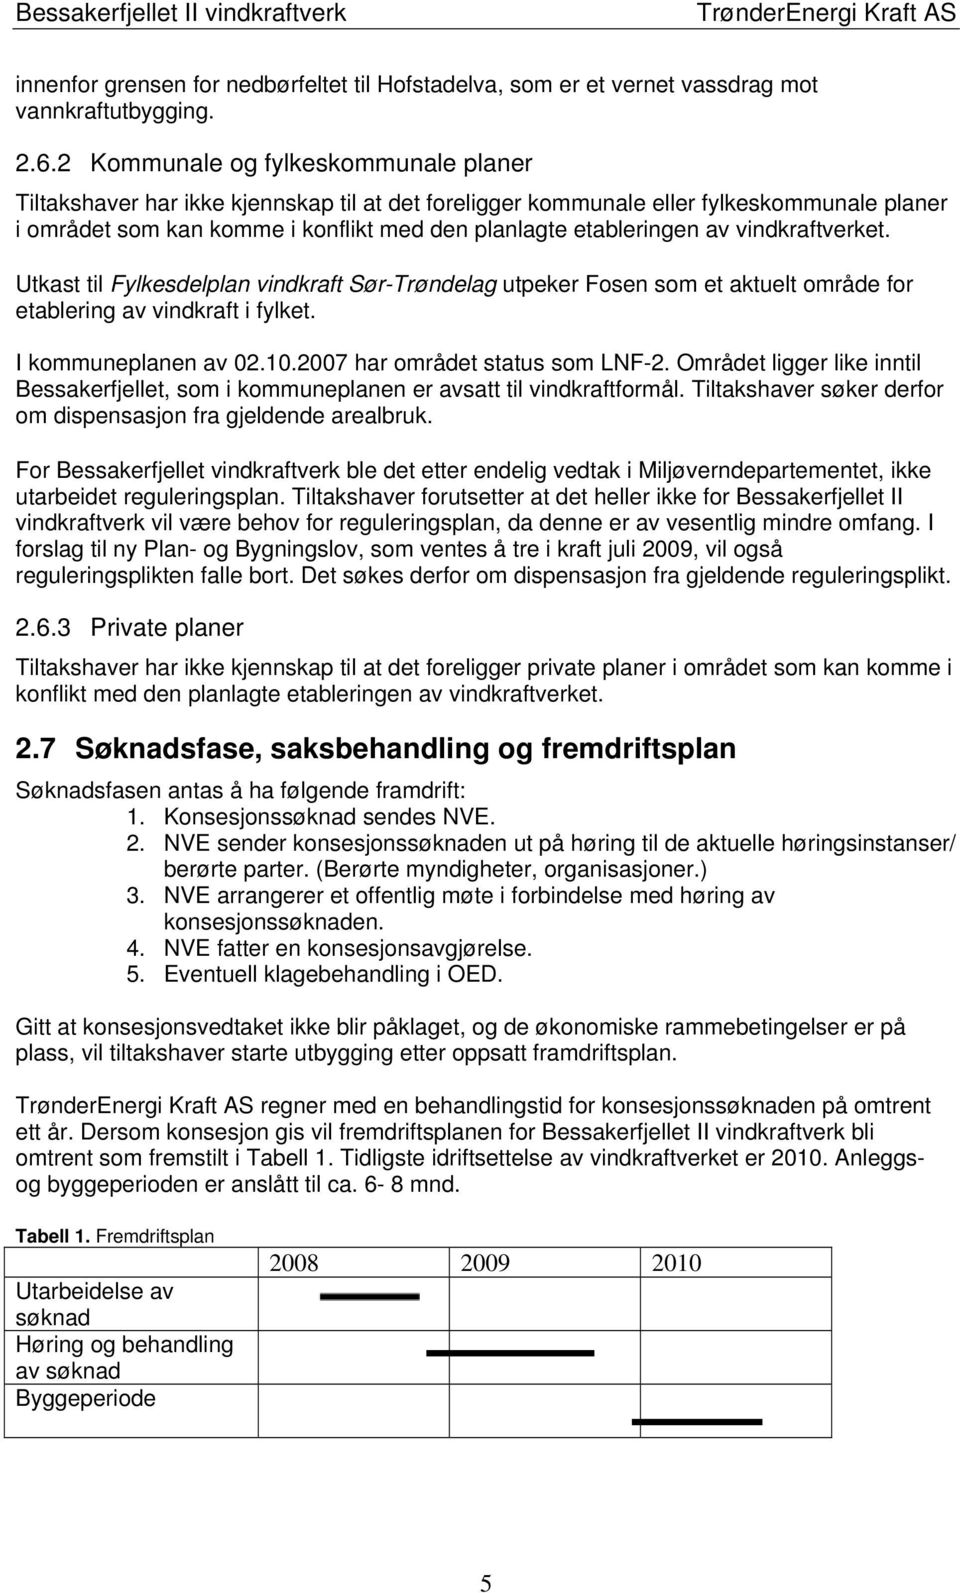 vindkraftverket. Utkast til Fylkesdelplan vindkraft Sør-Trøndelag utpeker Fosen som et aktuelt område for etablering av vindkraft i fylket. I kommuneplanen av 02.10.2007 har området status som LNF-2.